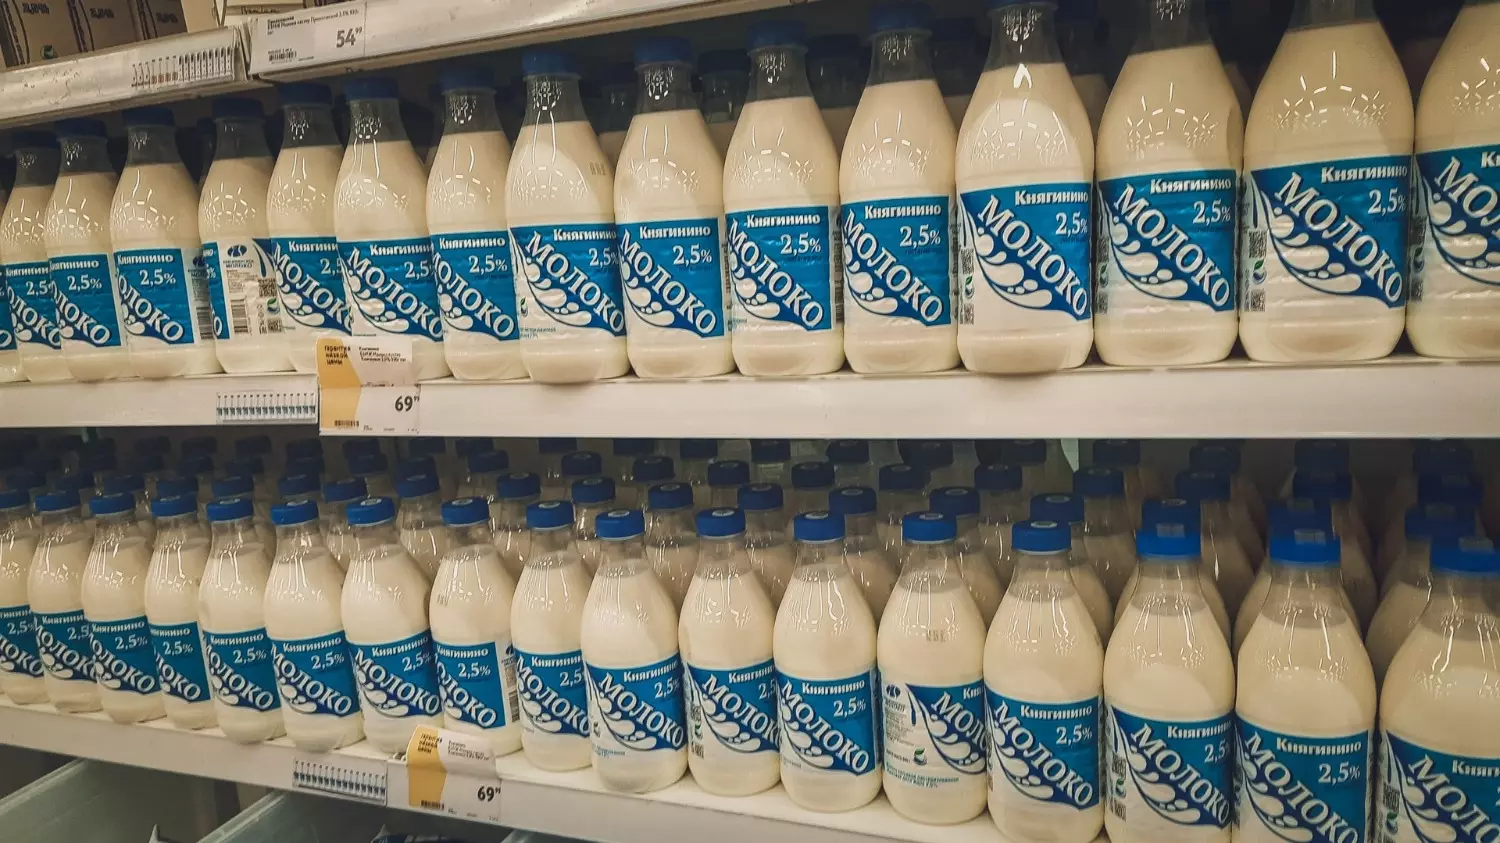 Потенциальную опасность представляет сырое молоко. Пастеризованное из магазина — безопасно, заверили эксперты